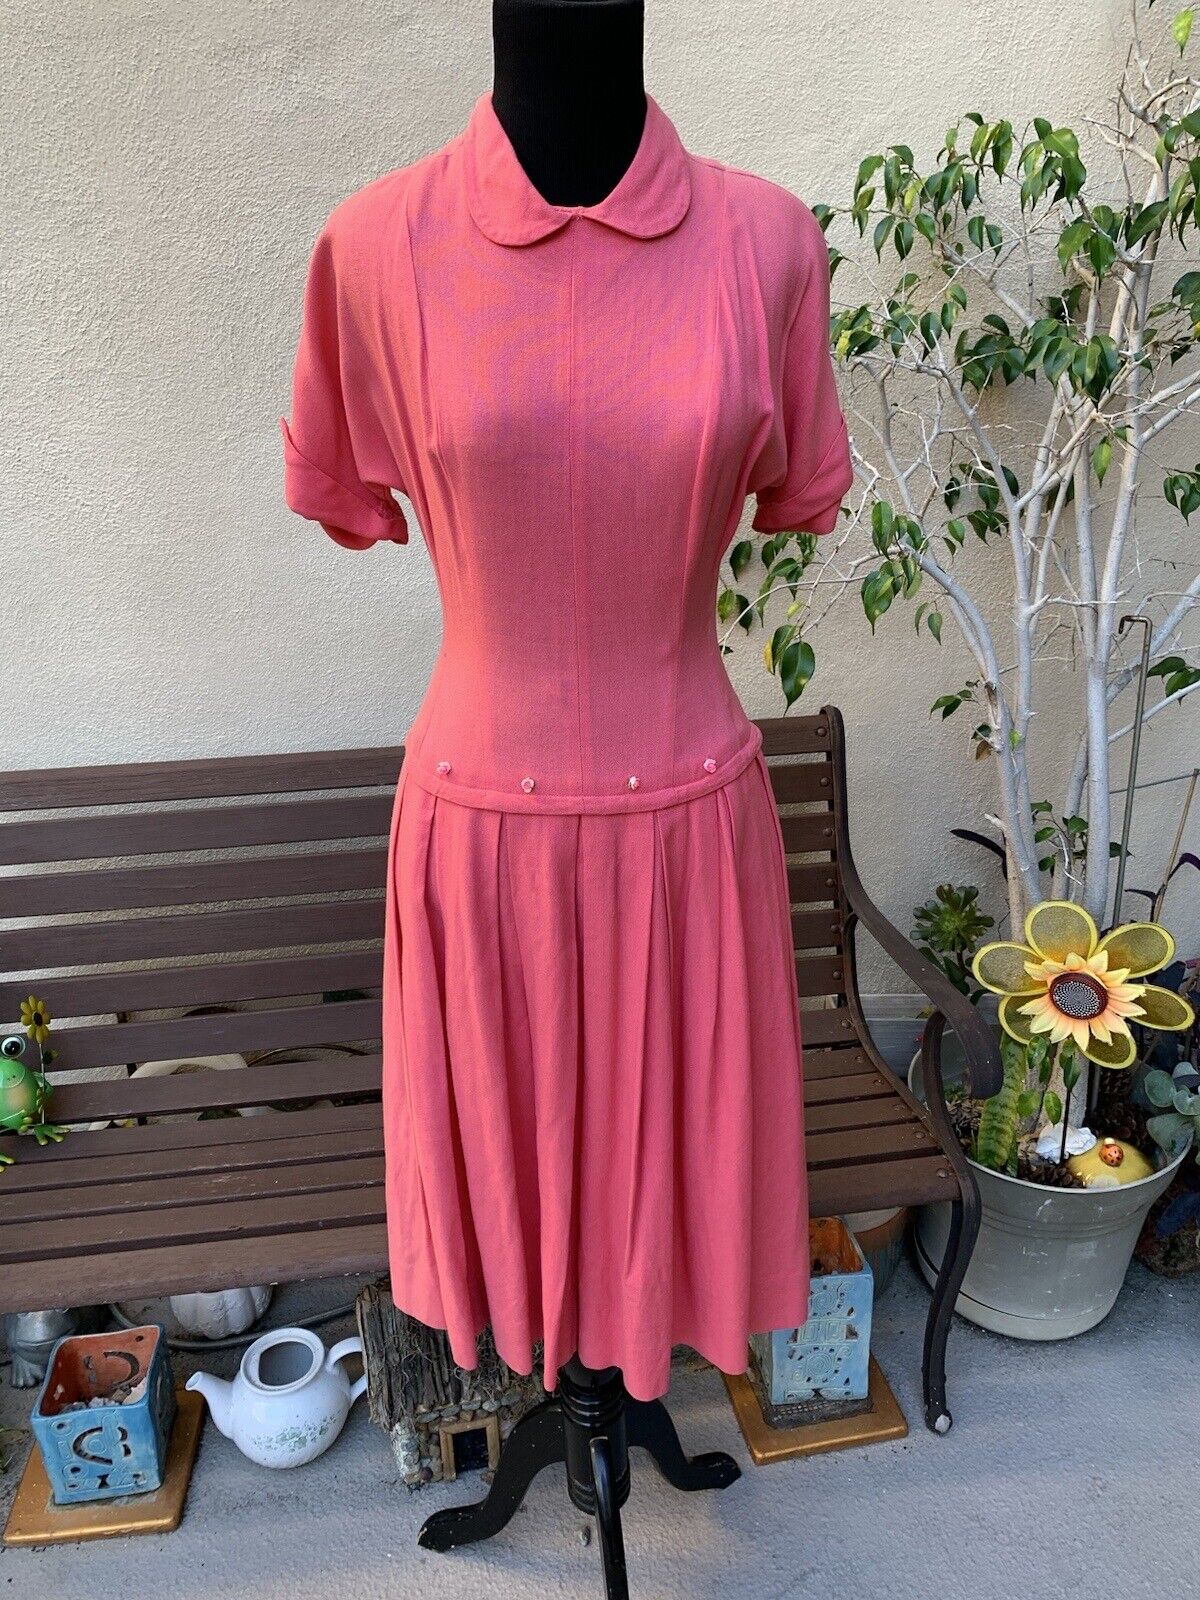 1940s 1950s Pink Peter Pan Collar Drop Waist Dress With Rose Appliqués XS